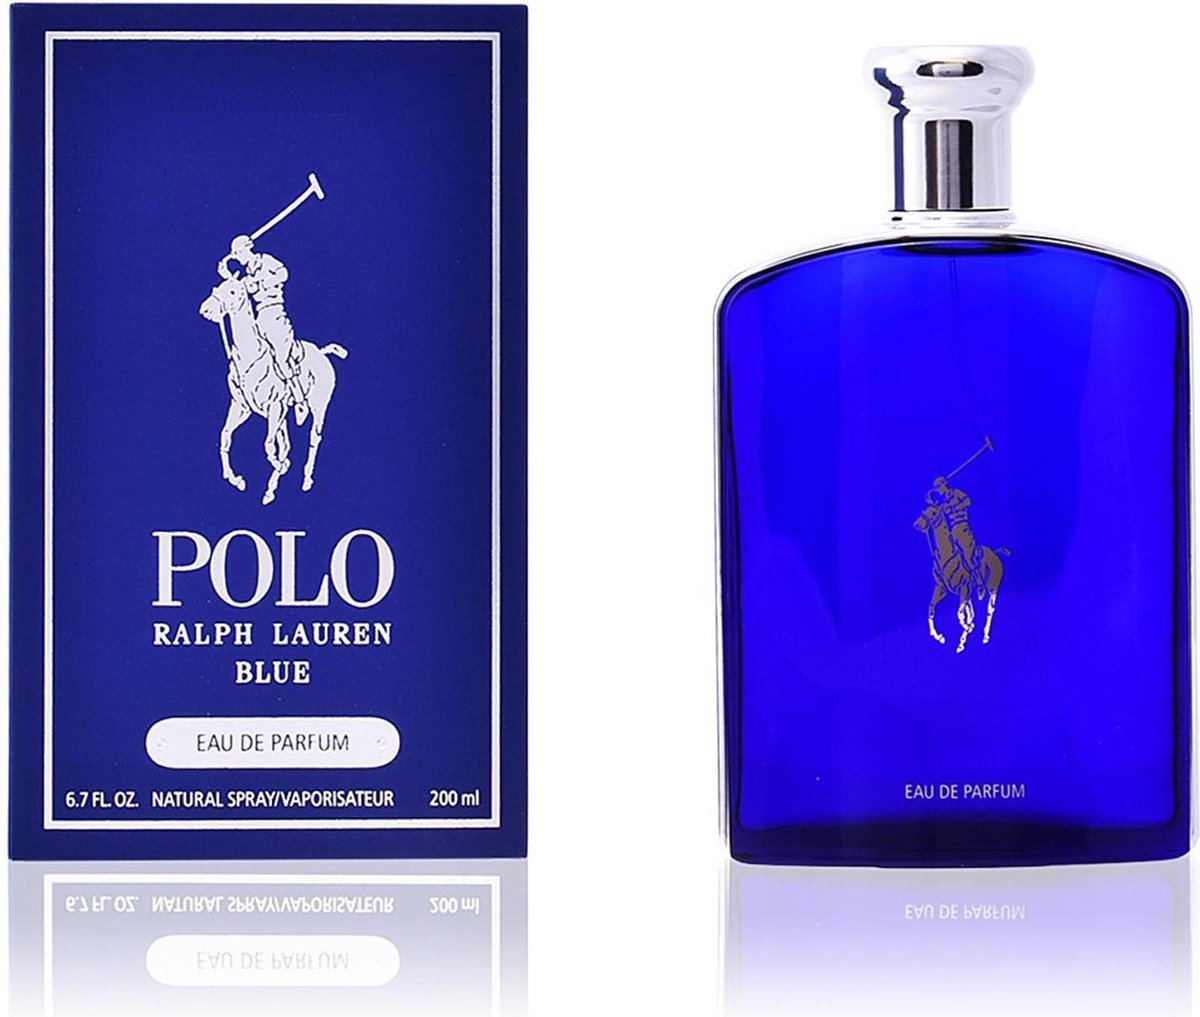 Ralph Lauren - Eau de parfum - Polo Blue - 200 ml